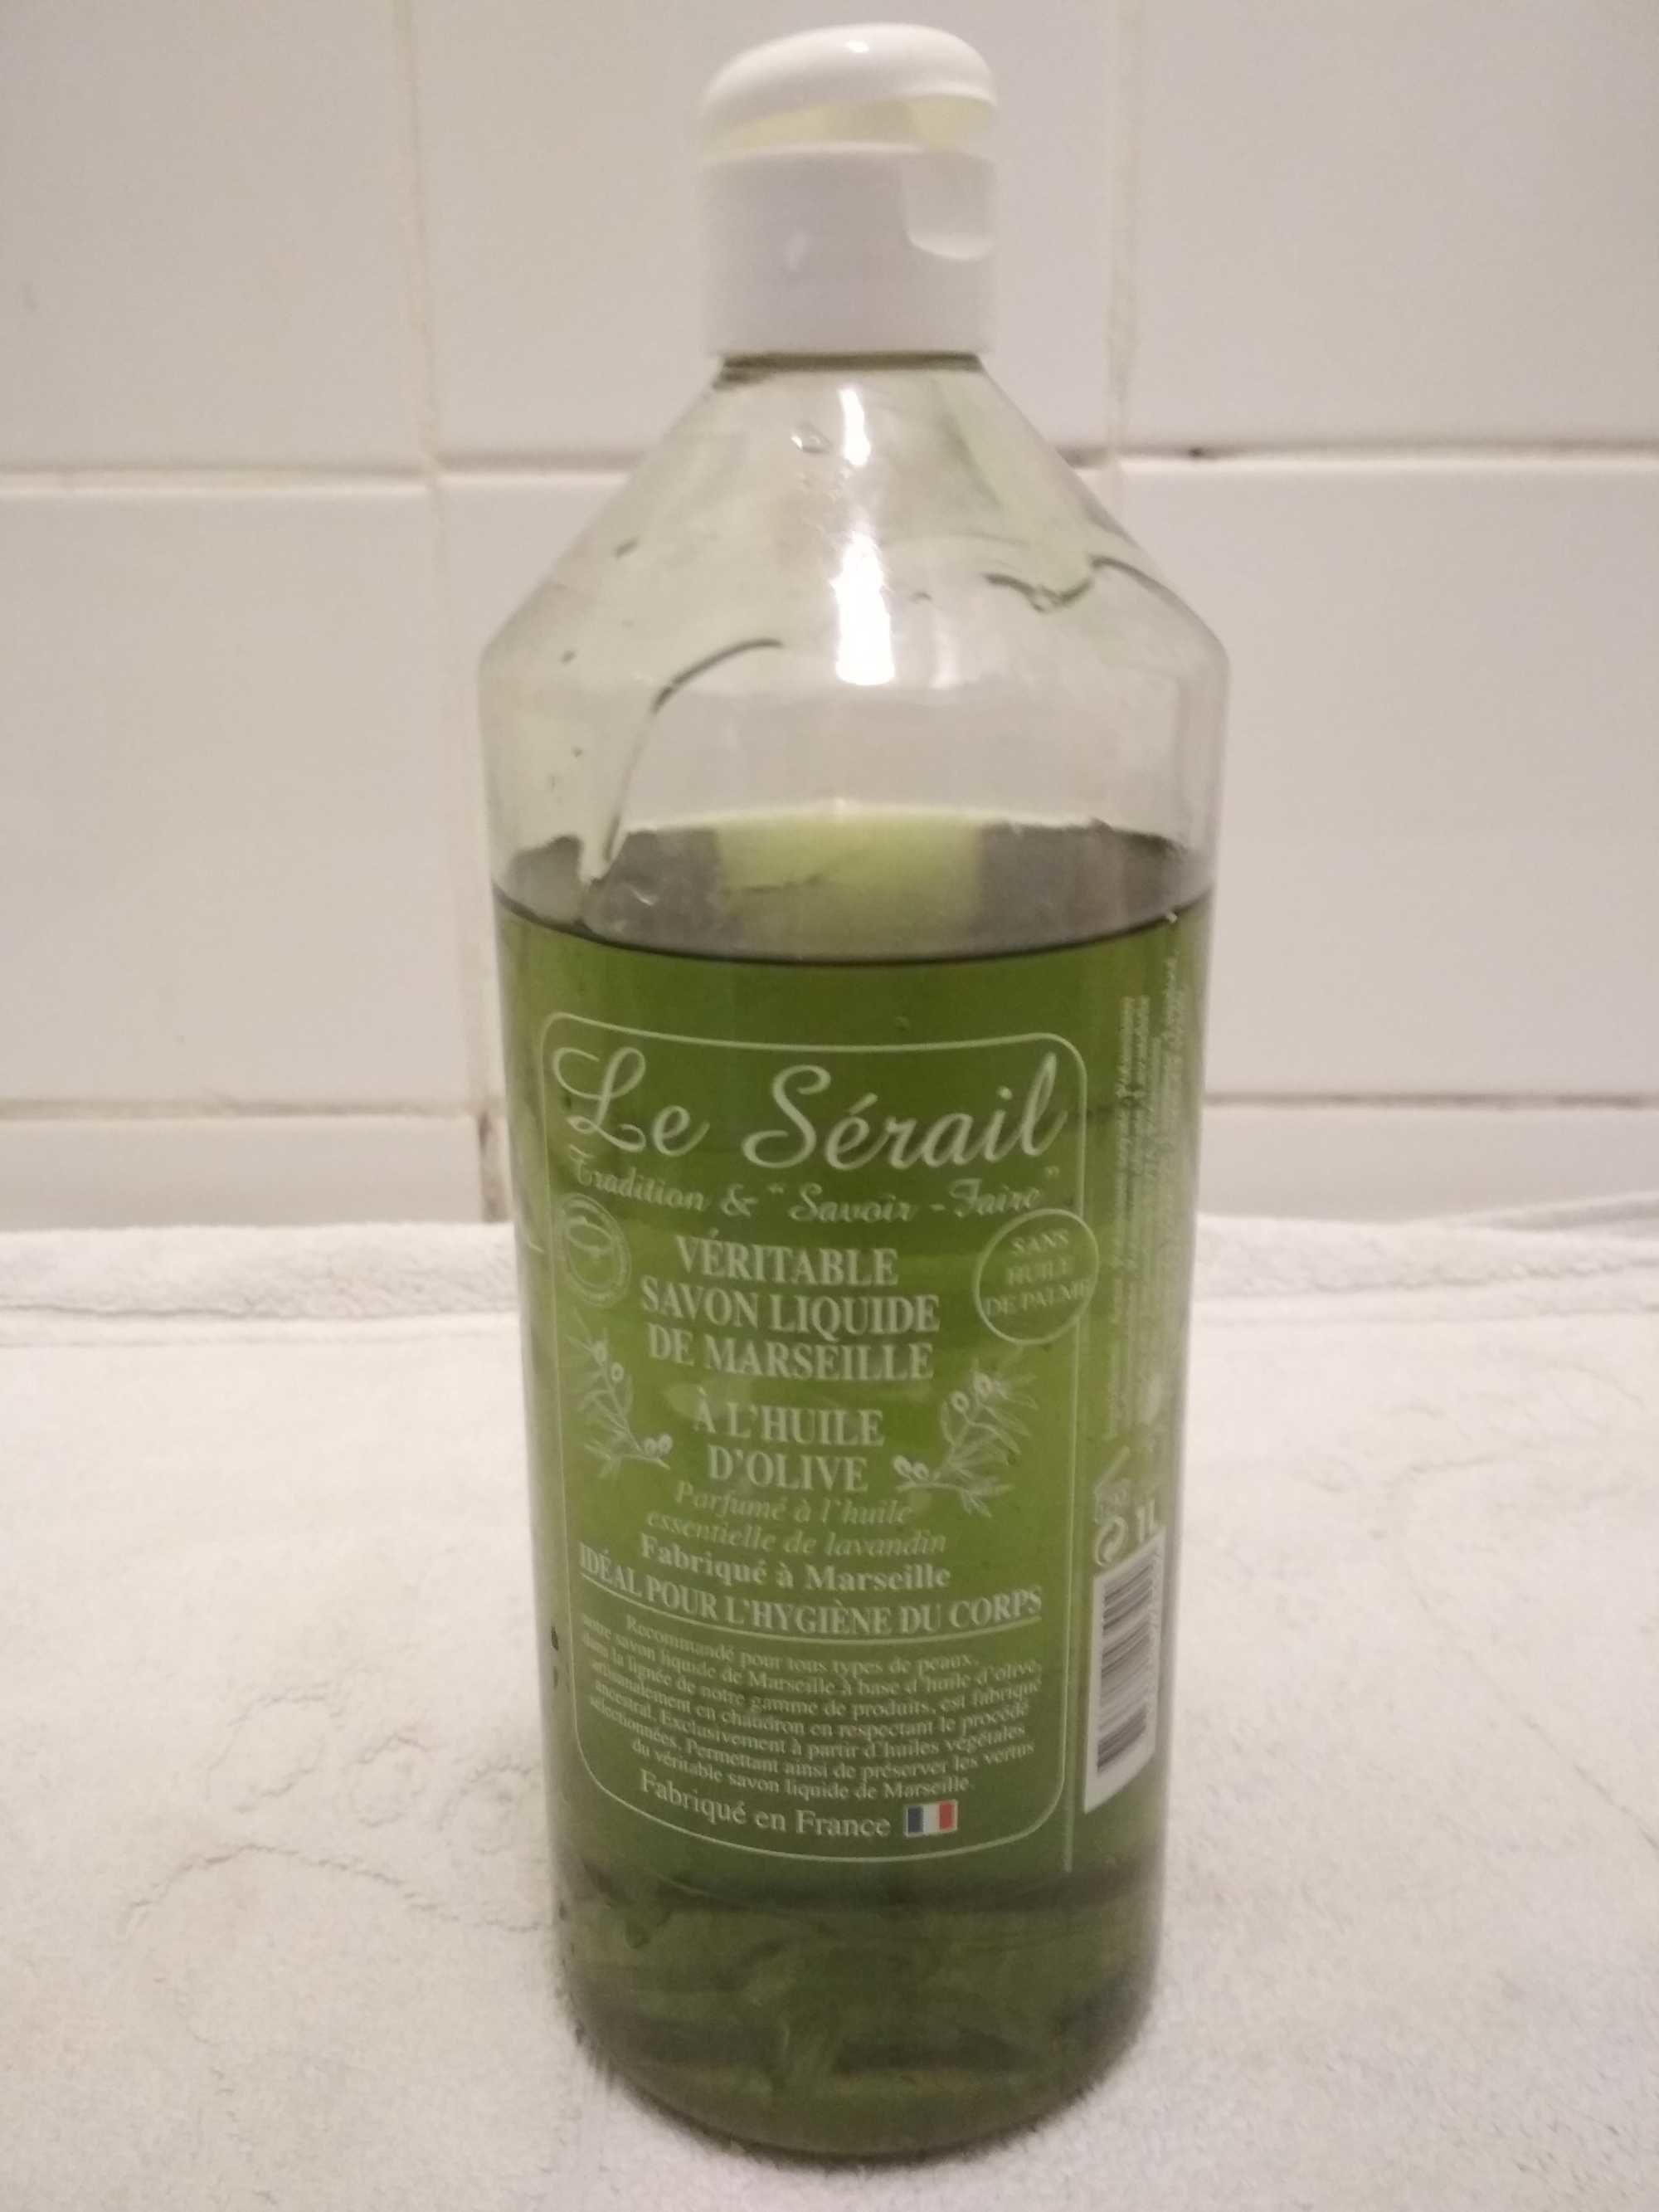 Véritable savon liquide de Marseille a l'huile d'olive Le Sérail - 製品 - fr